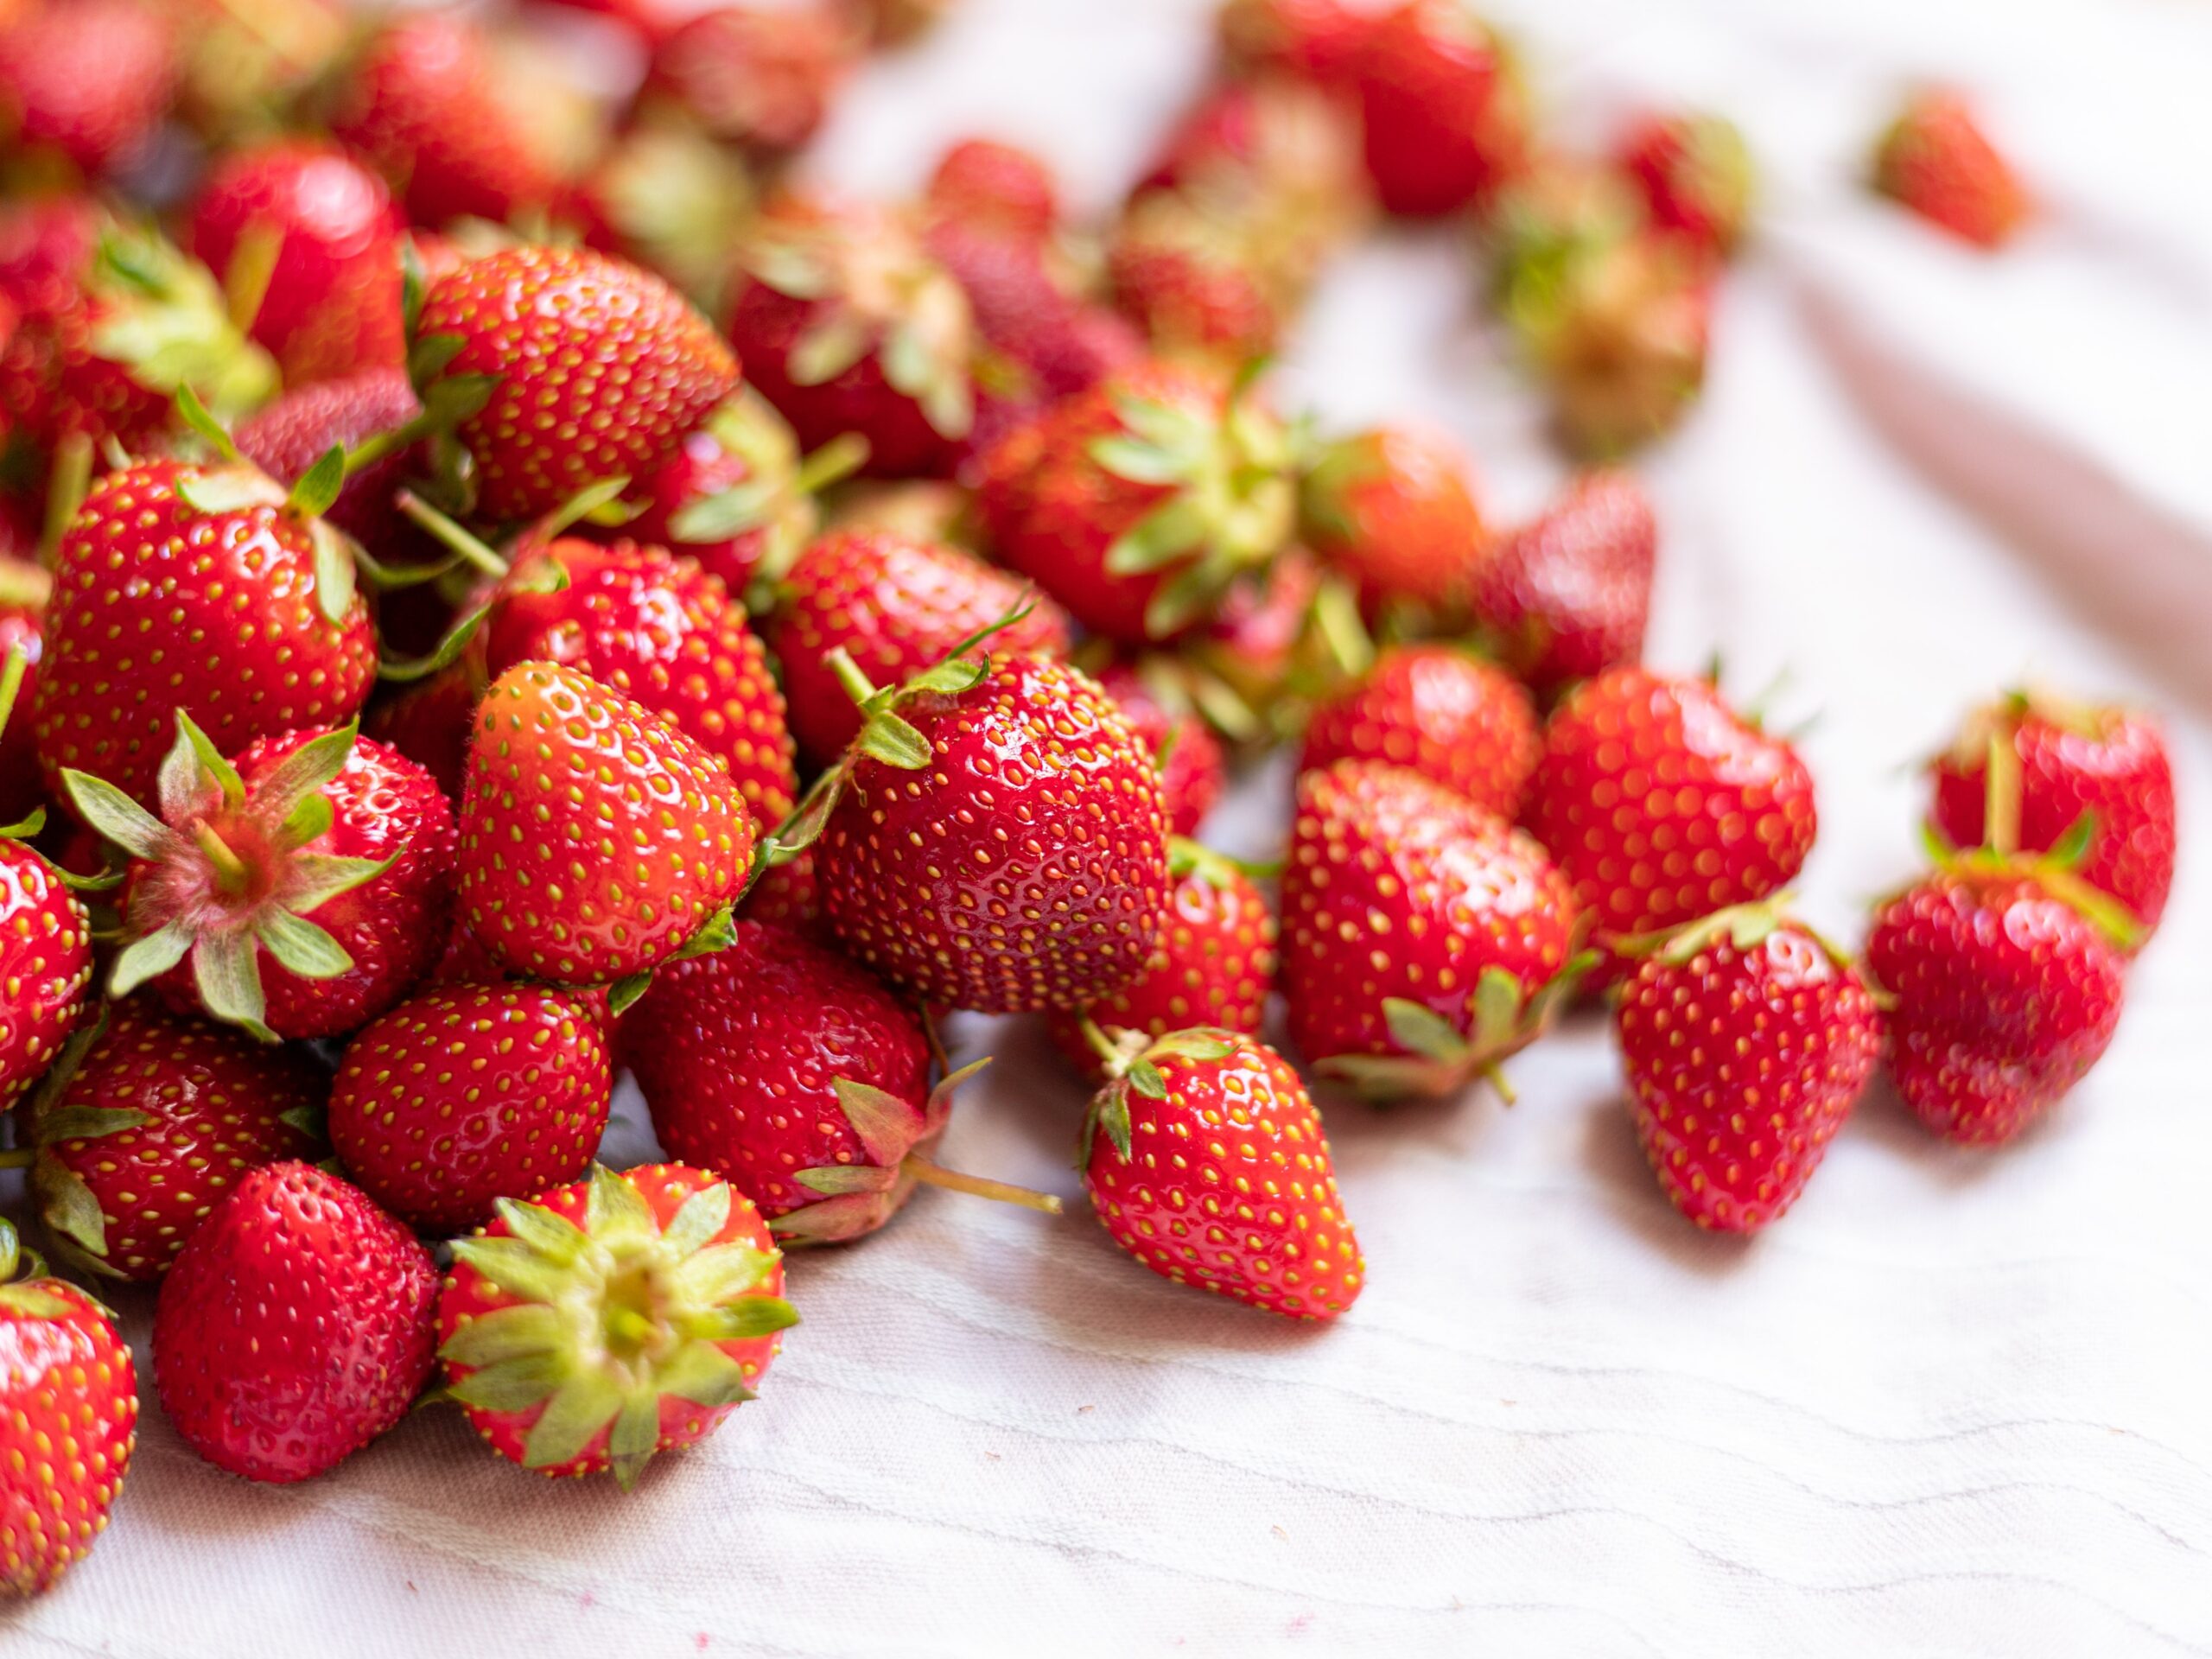 Strawberries & Sunshine! TYOH Day 14, June 2021